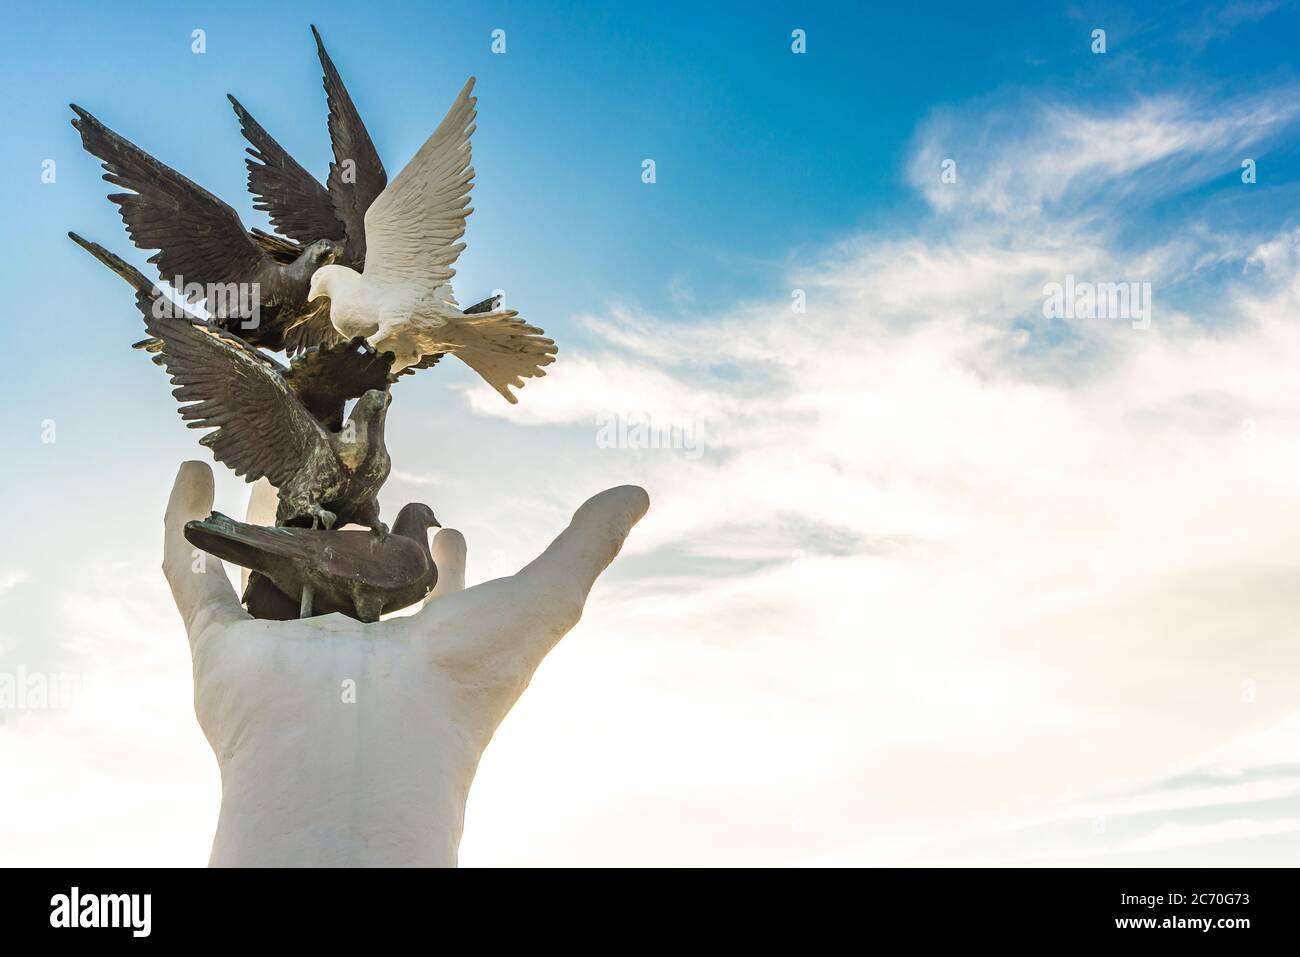 Une statue à Kusadasi, en Turquie, avec une main libérant des oiseaux de différentes couleurs symbolisant la liberté, la diversité et la paix Banque D'Images